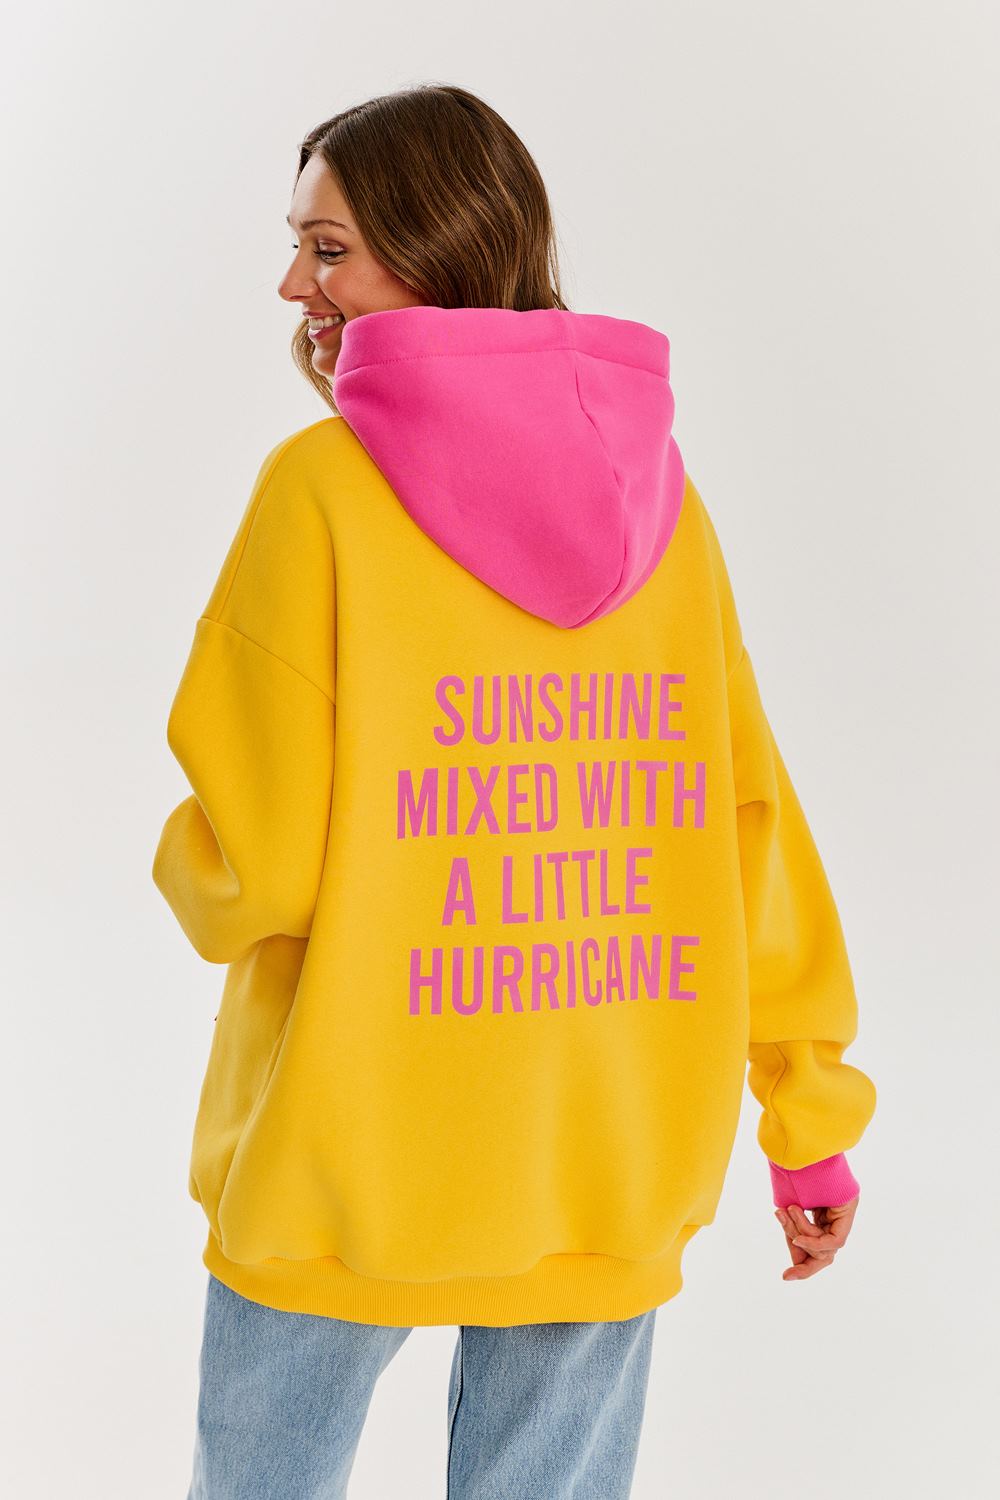 Sunshine & Hurricane hoodie